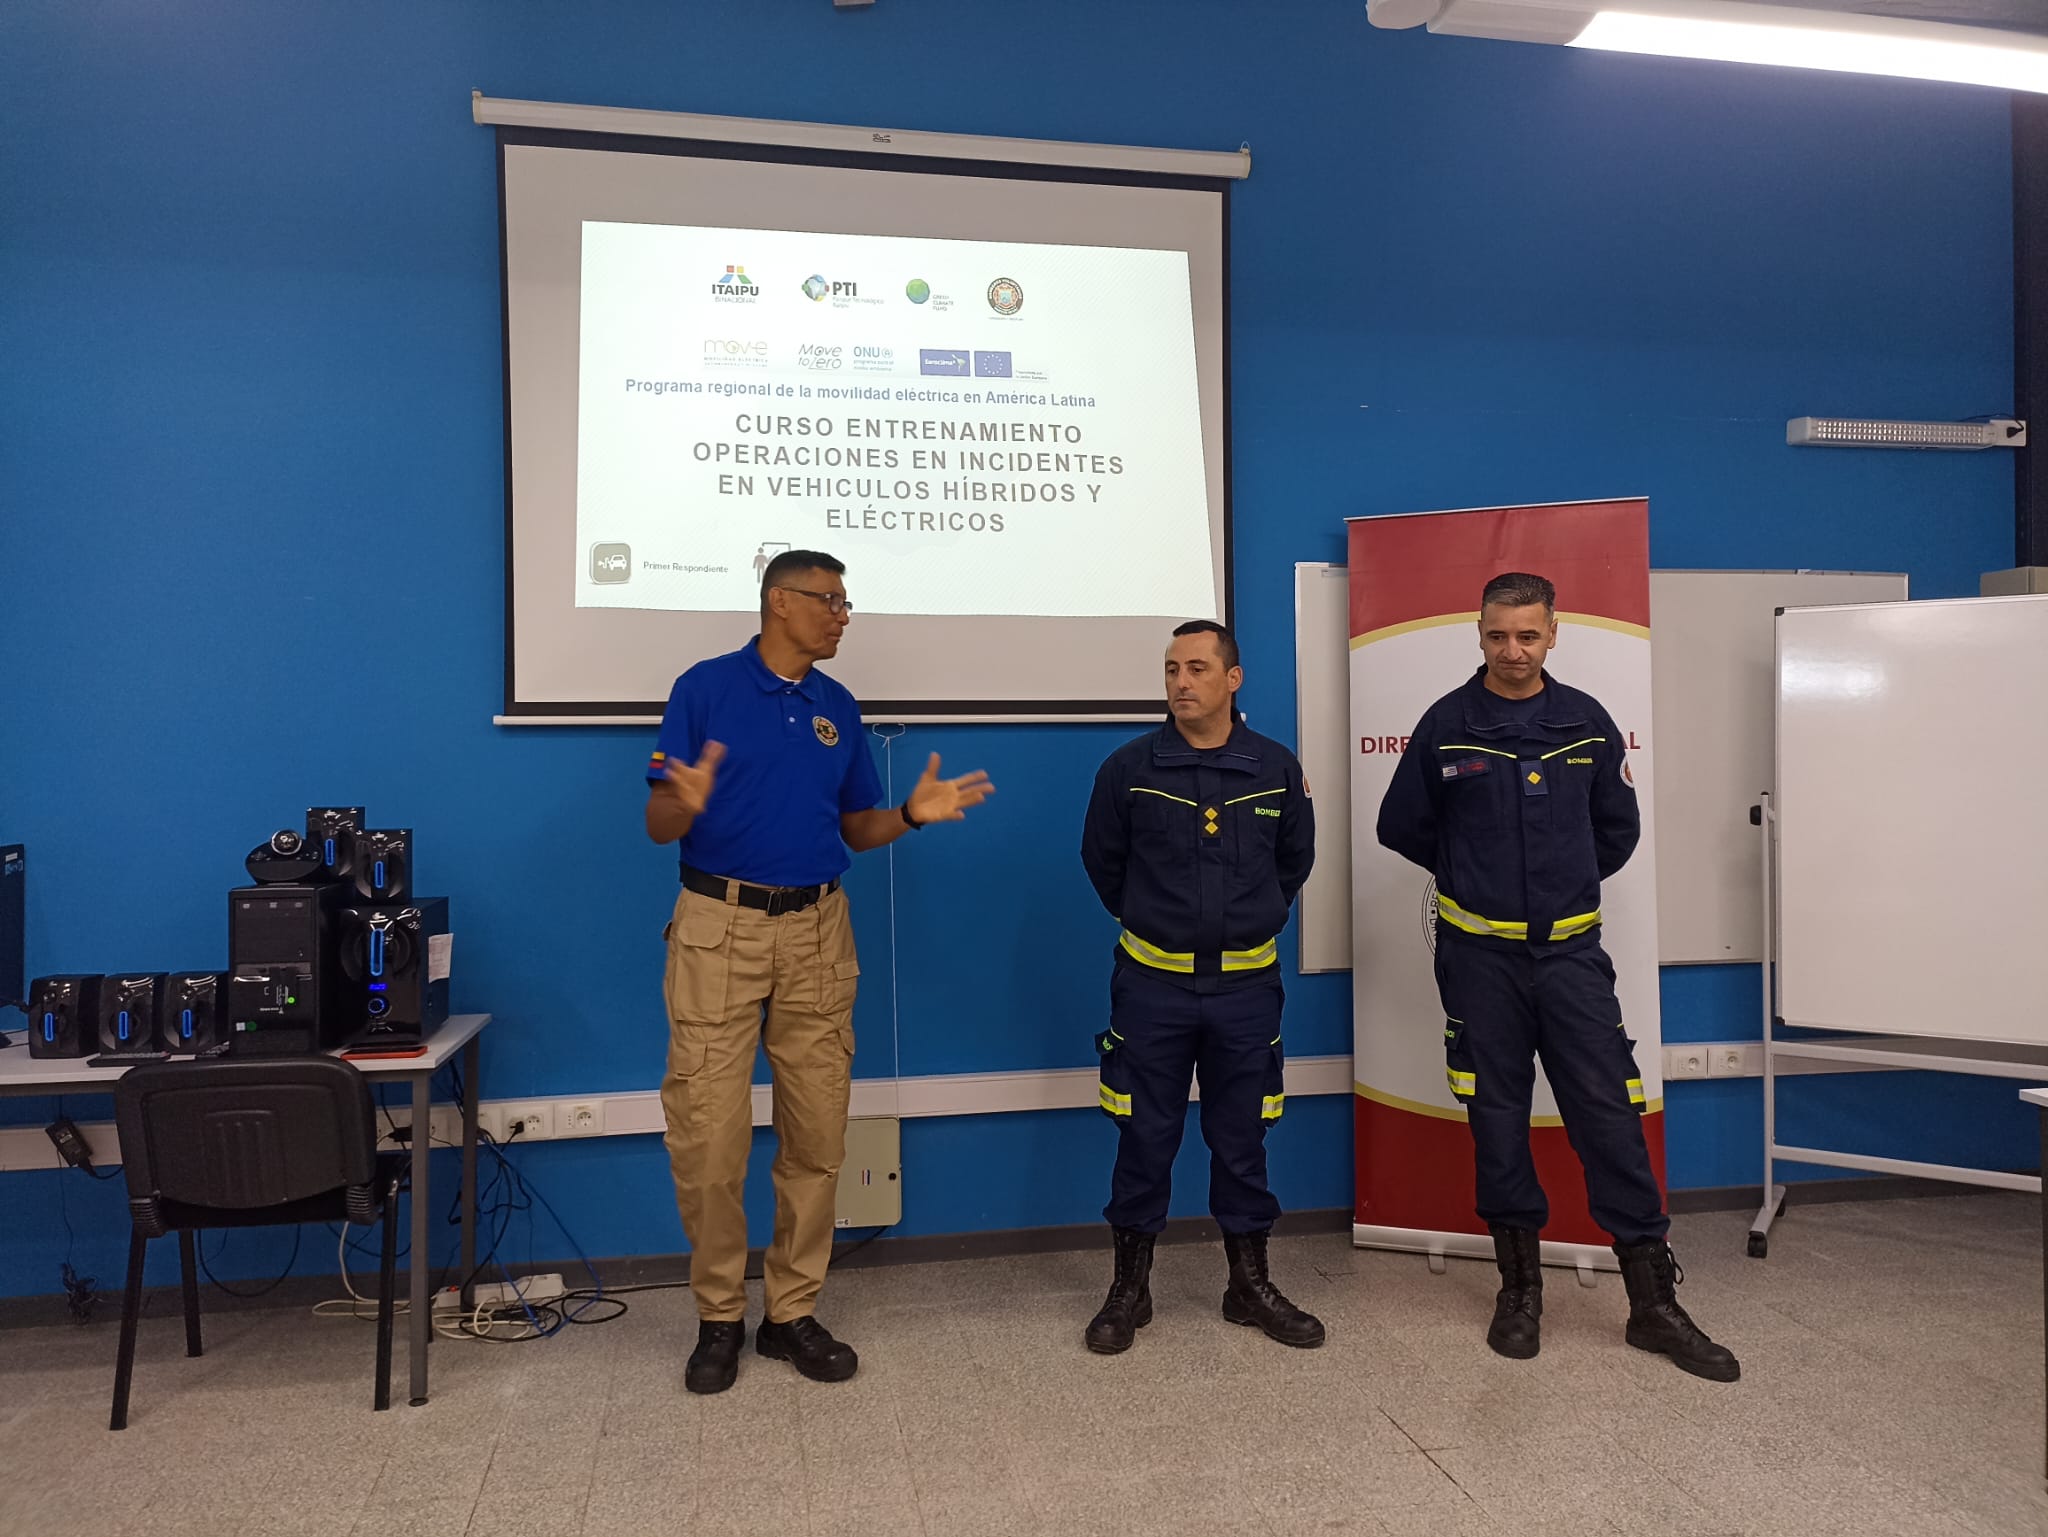 IMG_20230509_16000-Lcnhm3hx.jpeg - El pasado jueves 11 de mayo culminó la &#034;Capacitación para bomberos sobre manejo de incidentes relacionados con la movilidad eléctrica&#034; en donde se capacitaron a 25 bomberos en la Base Aérea de Santa Bernardina del departamento de Durazno. Esta capacitación es la continuación del primer curso regional que organizó la plataforma MOVE del Programa de la Naciones Unidas para el Medio Ambiente a finales de 2022 en Paraguay, donde participaron y se formaron dos bomberos instructores de Uruguay.